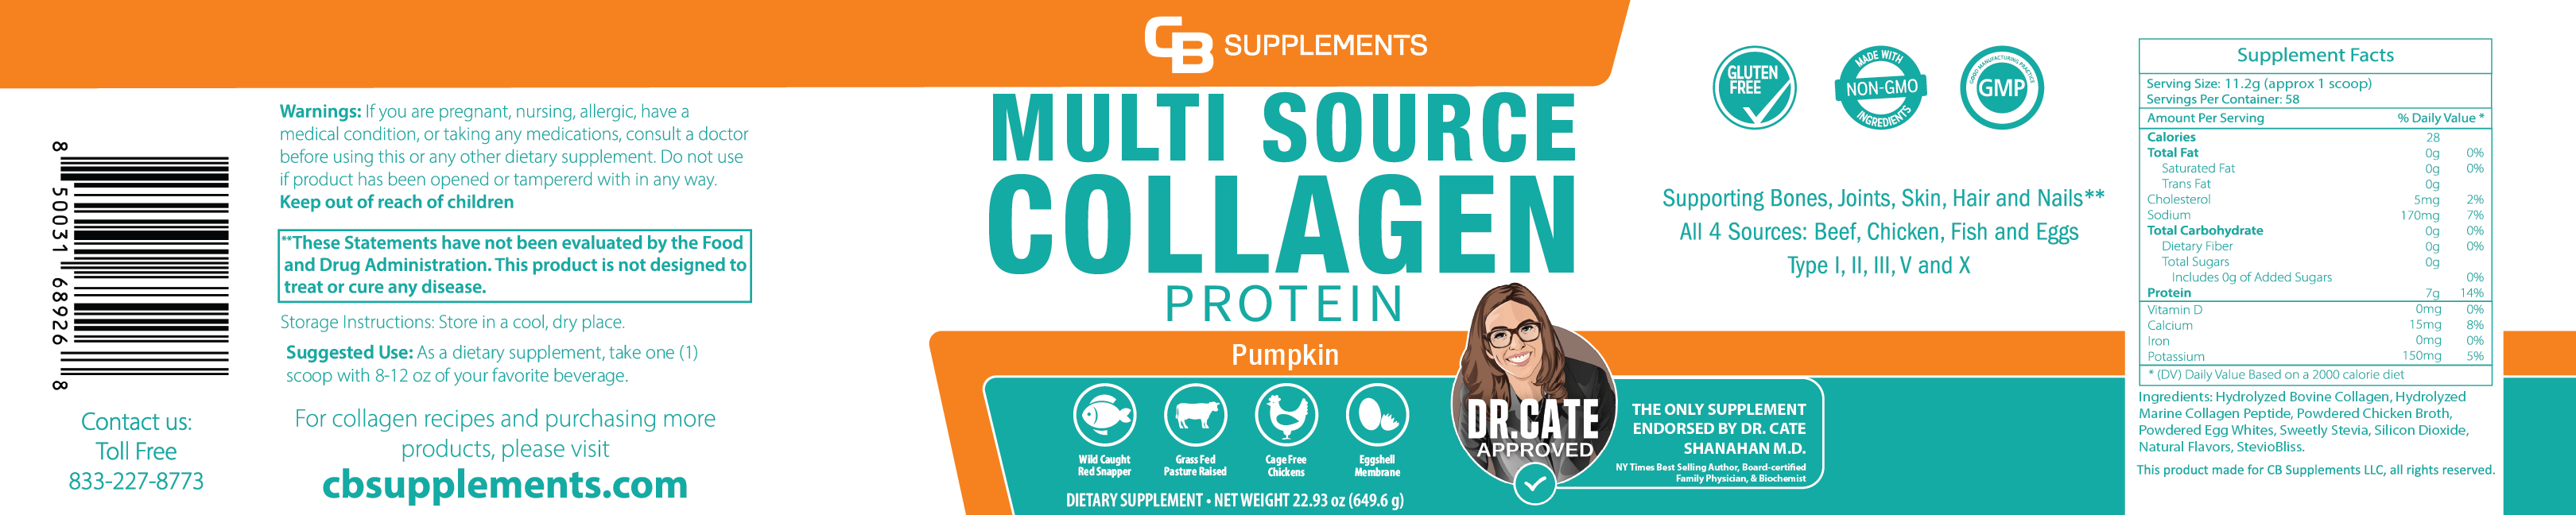 Pumpkin Multi Collagen Protein Powder Label and Ingredients